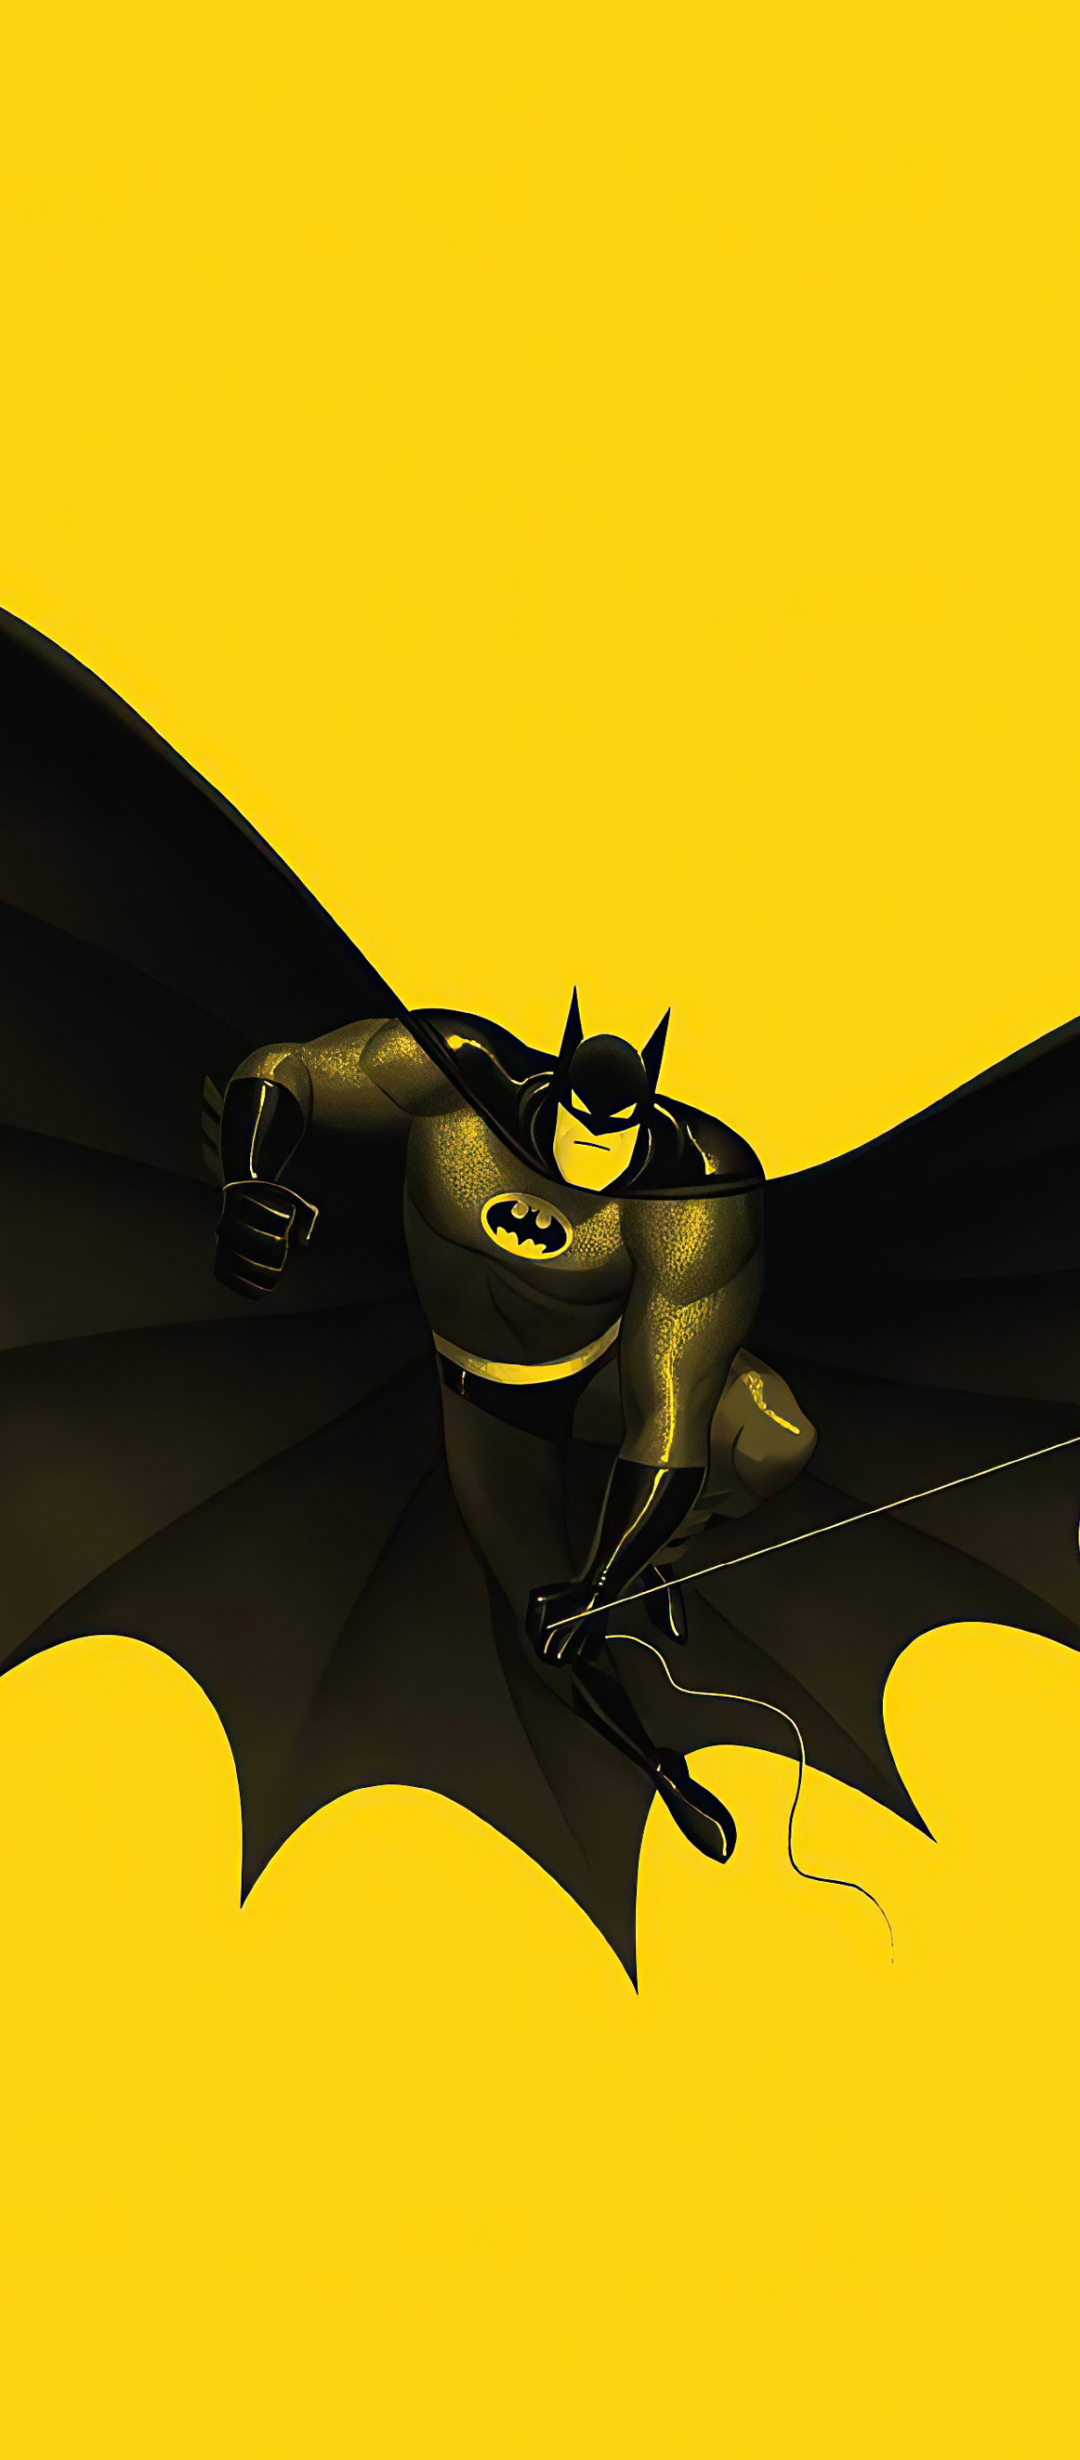 Скачать обои Бэтмен: Мультсериал на телефон бесплатно